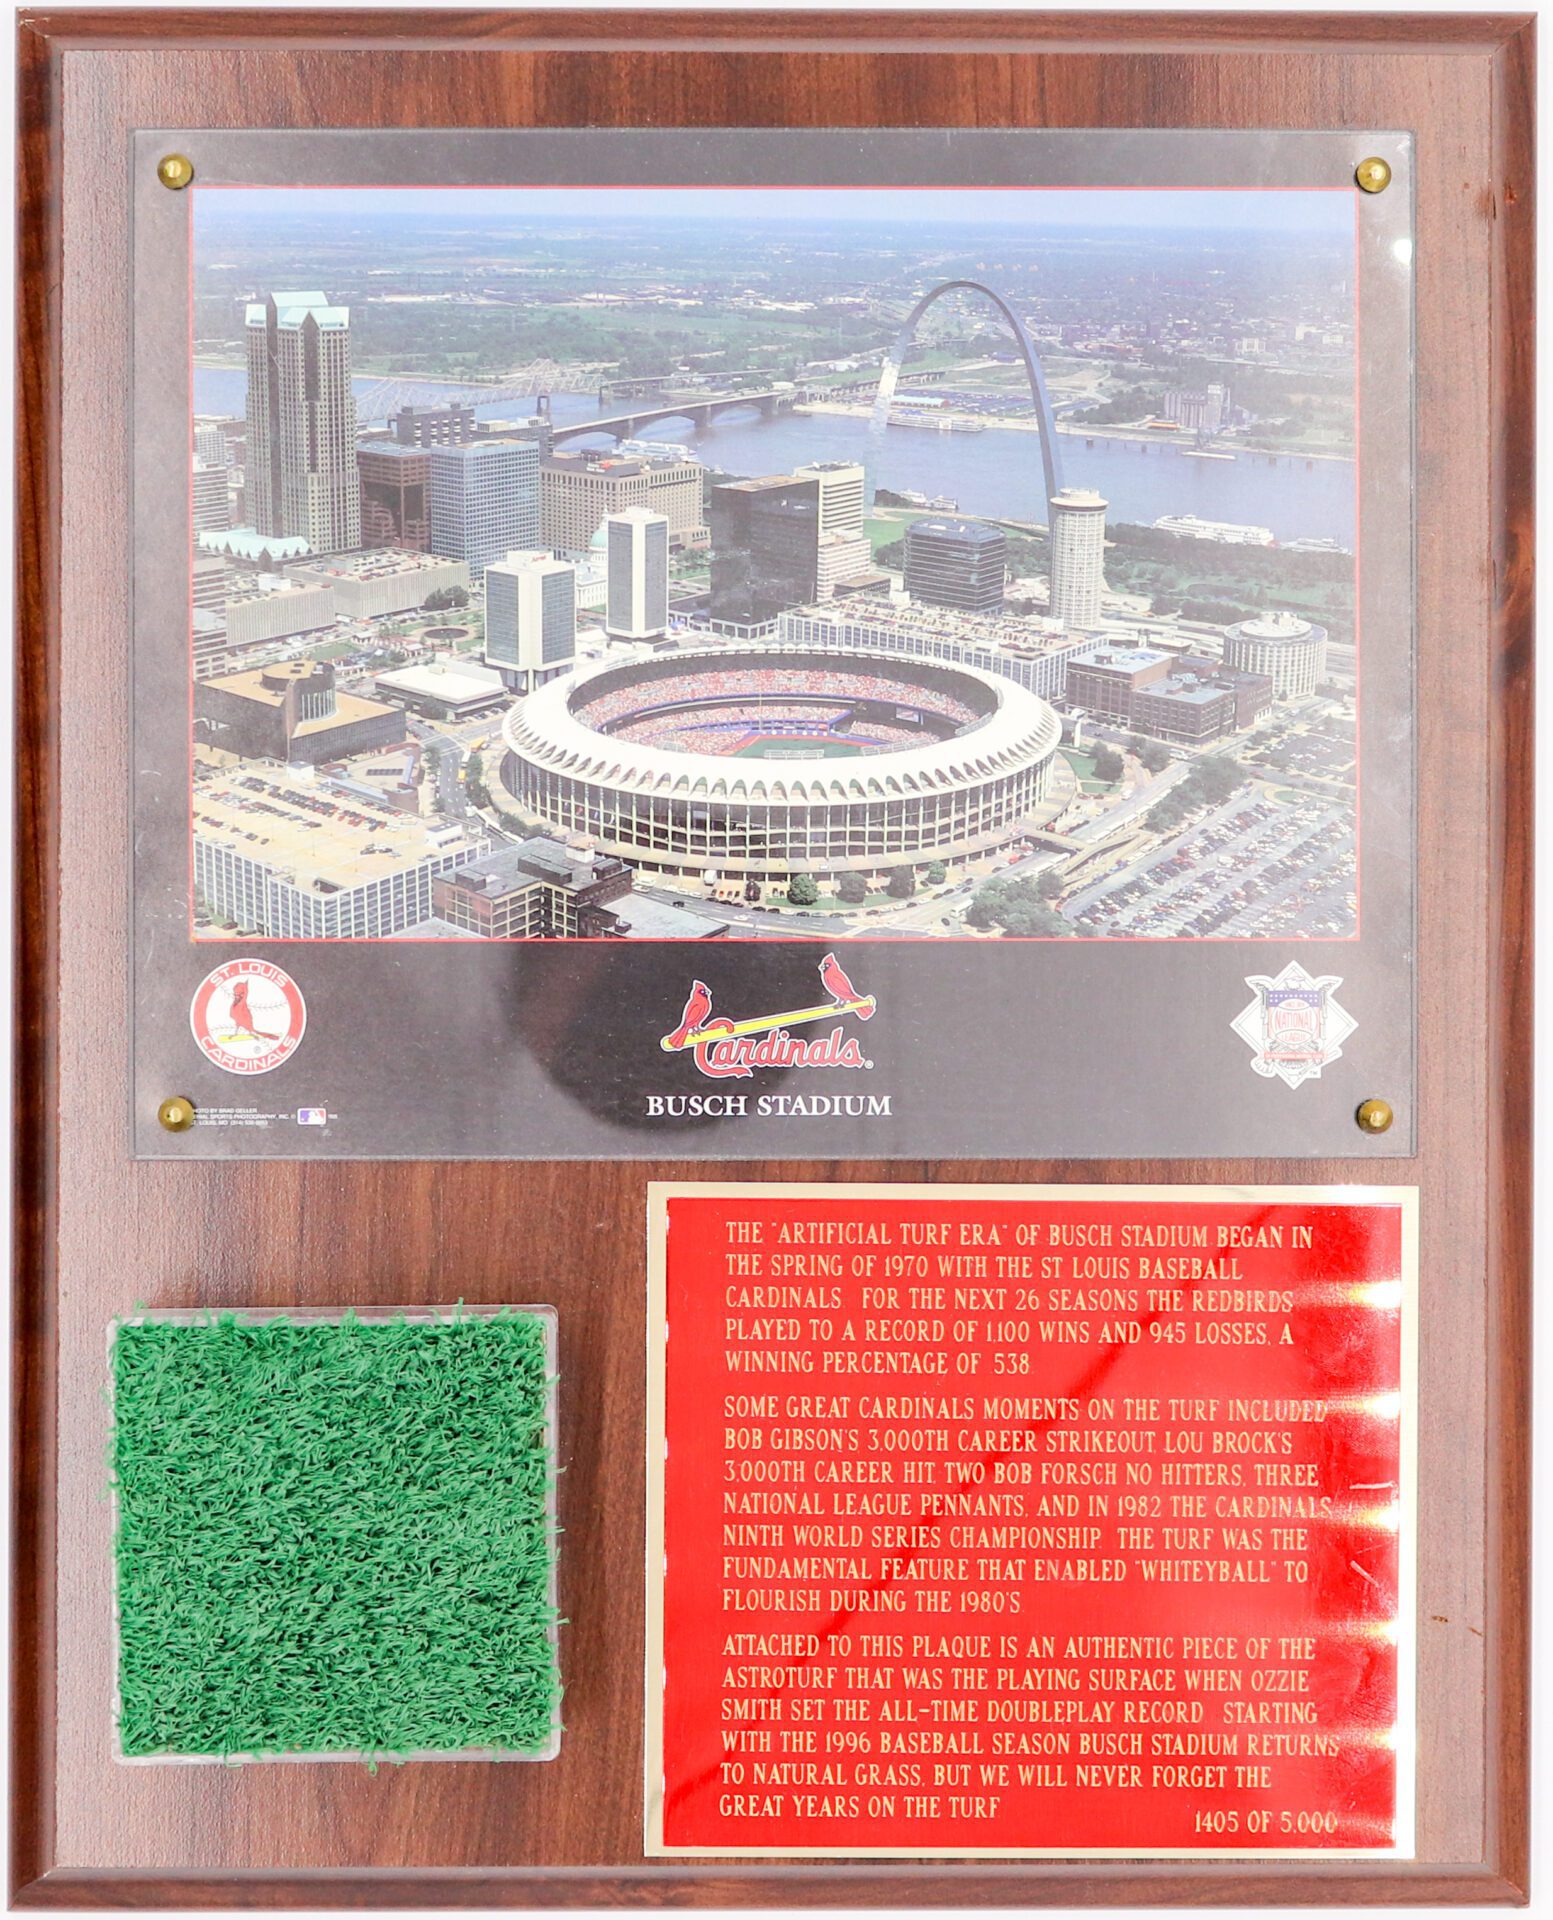 St. Louis Cardinals, 3D Stadium View, Busch Stadium